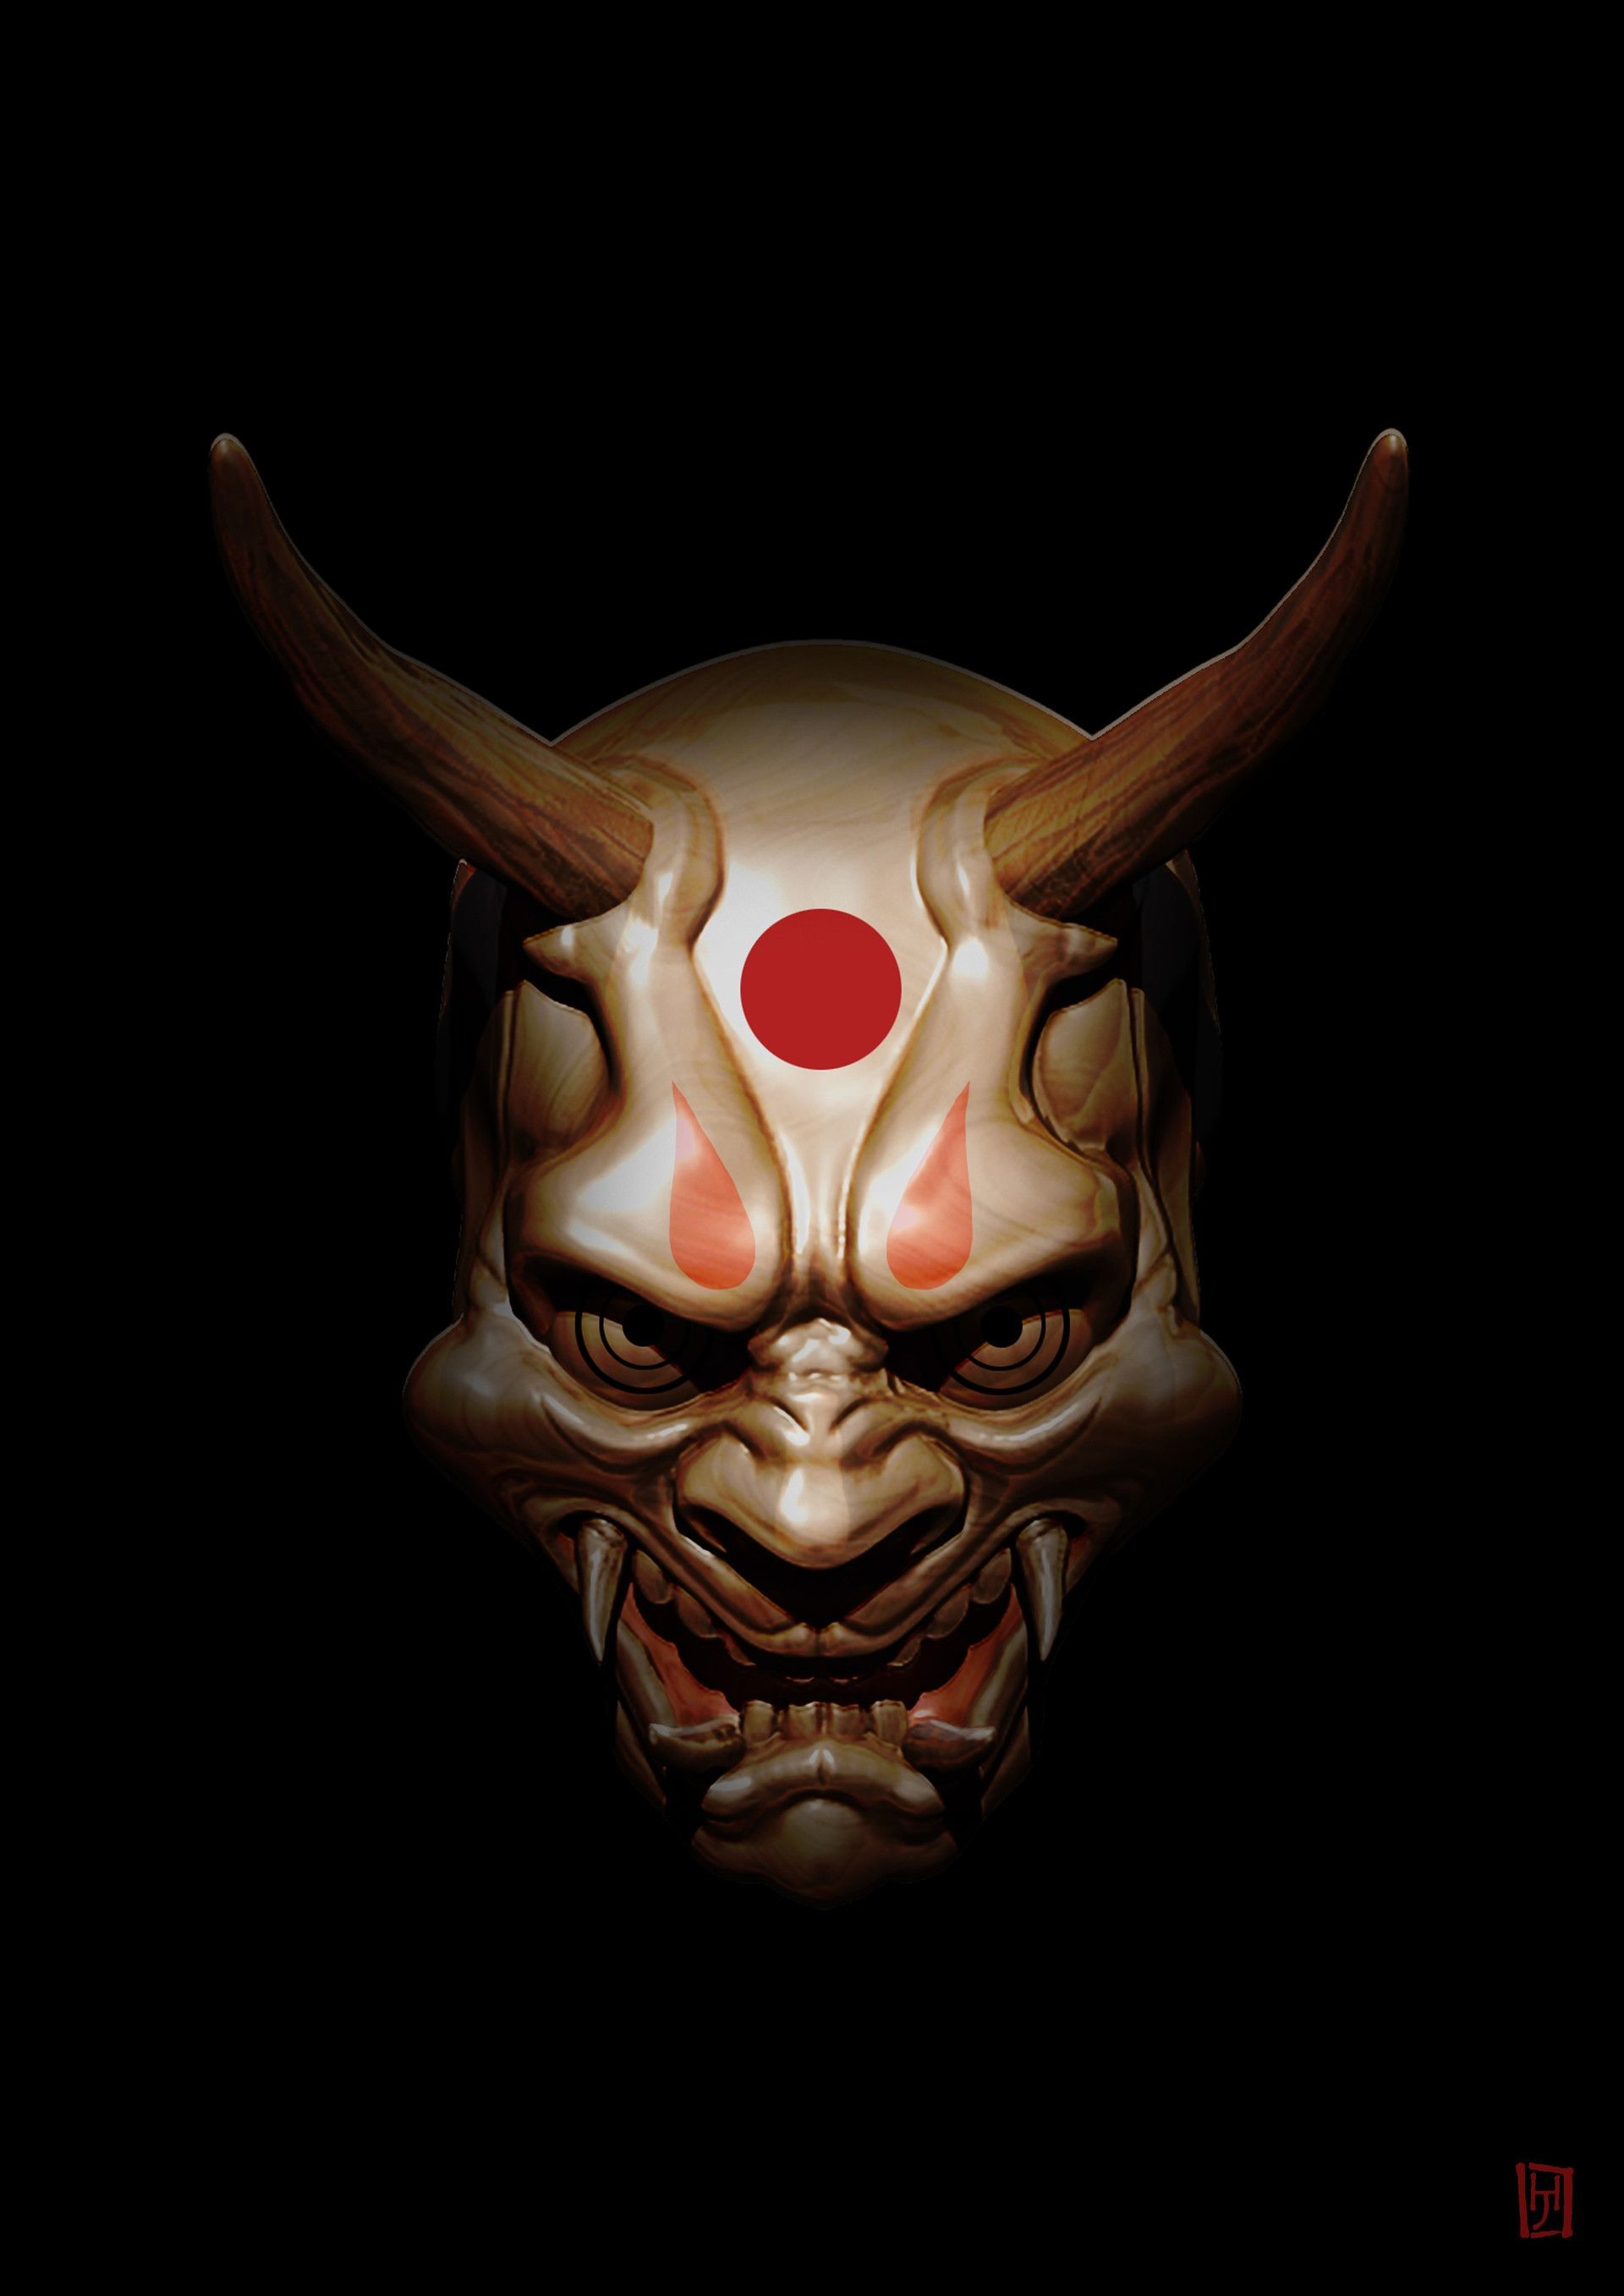 Japanese Demon Mask Wallpaper